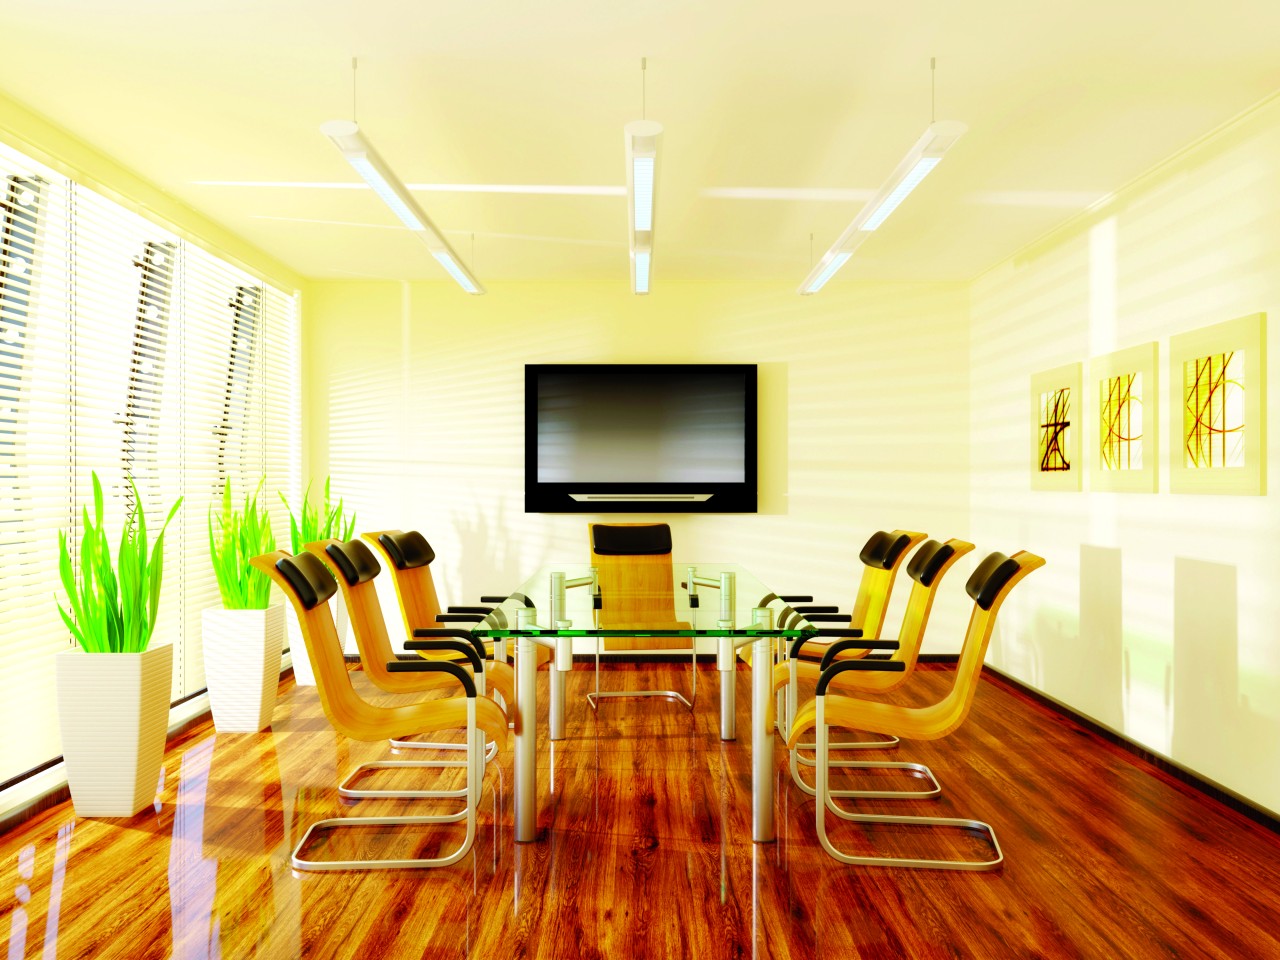 av-boardroom-installation-conference-room-technolog_20220531-002929_1